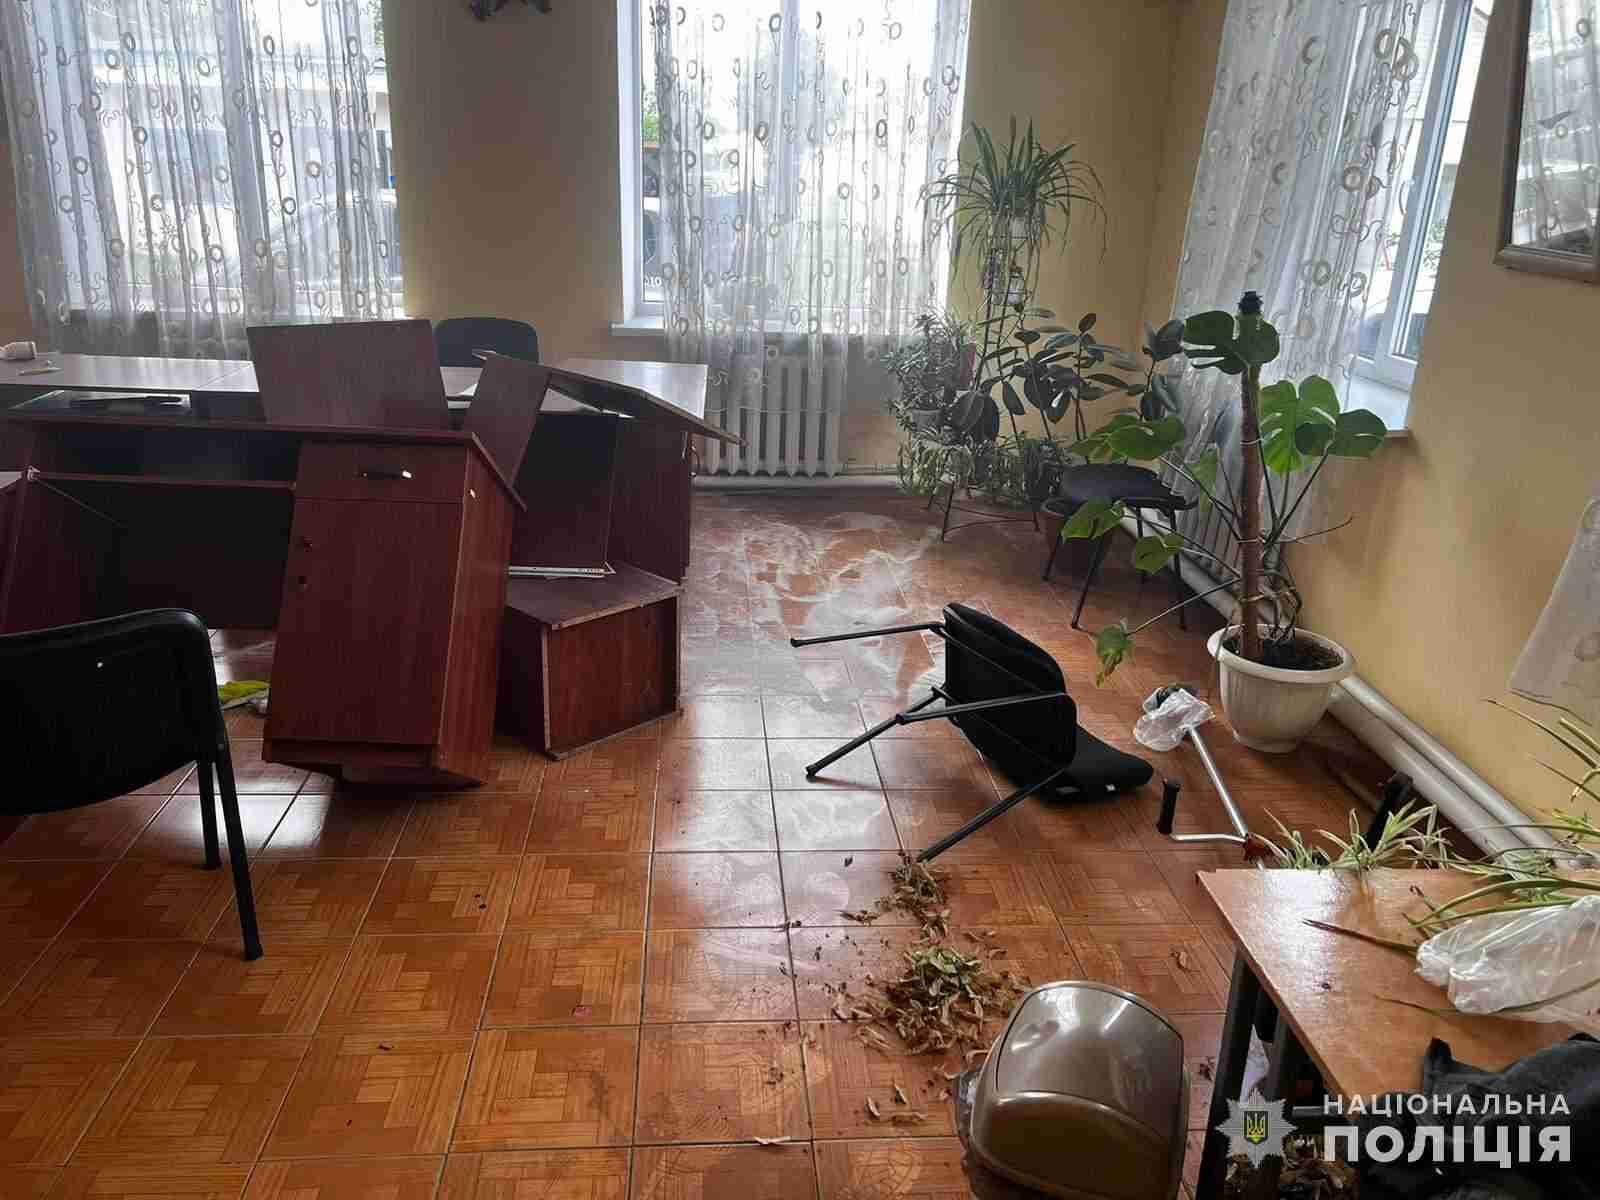 Двоє учнів підпалили кабінет директора школи (ФОТО, ВІДЕО)